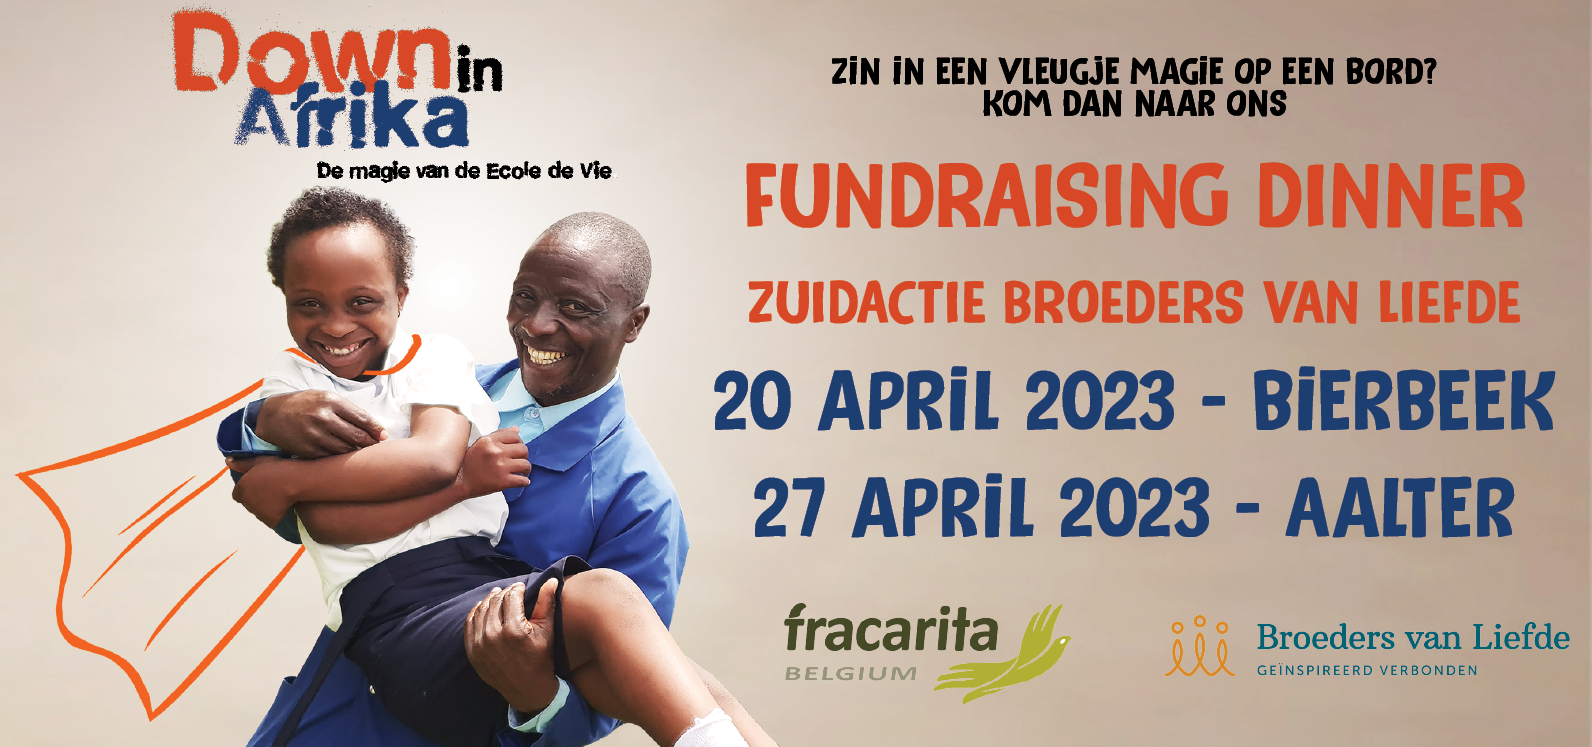 Inschrijving fundraising dinner 2023 Fracarita Belgium Broeders van Liefde